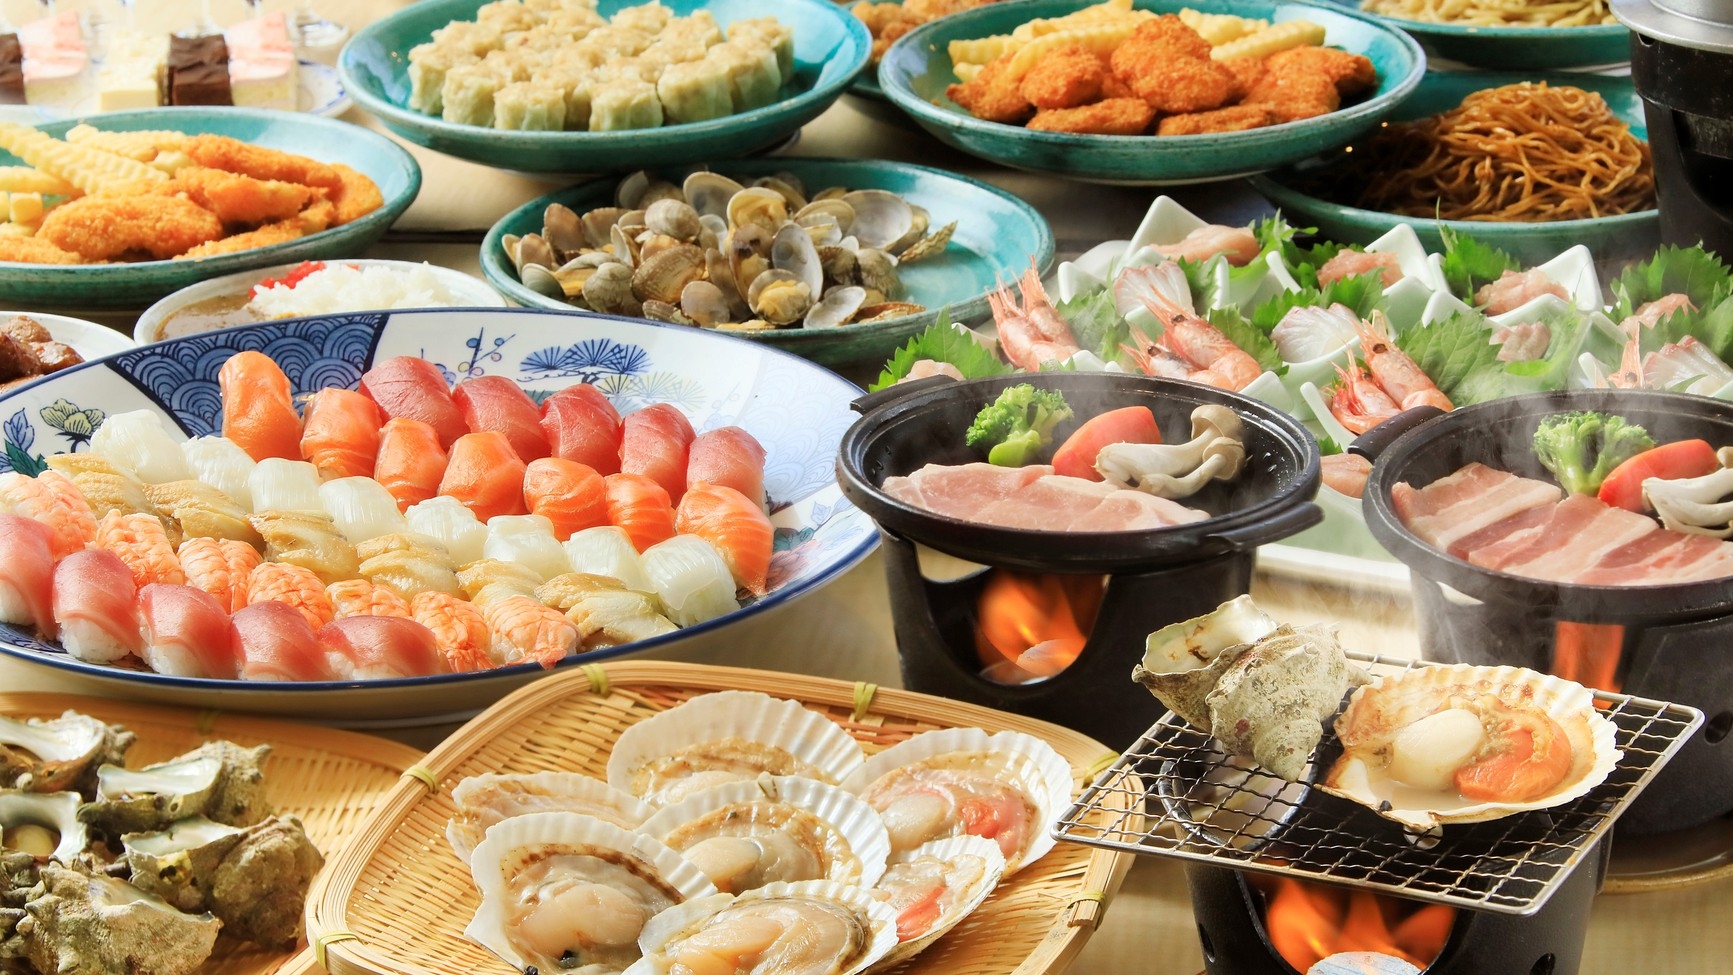 【夏休み早期予約】海鮮浜焼きを家族や仲間と楽しめる夕朝食付プラン